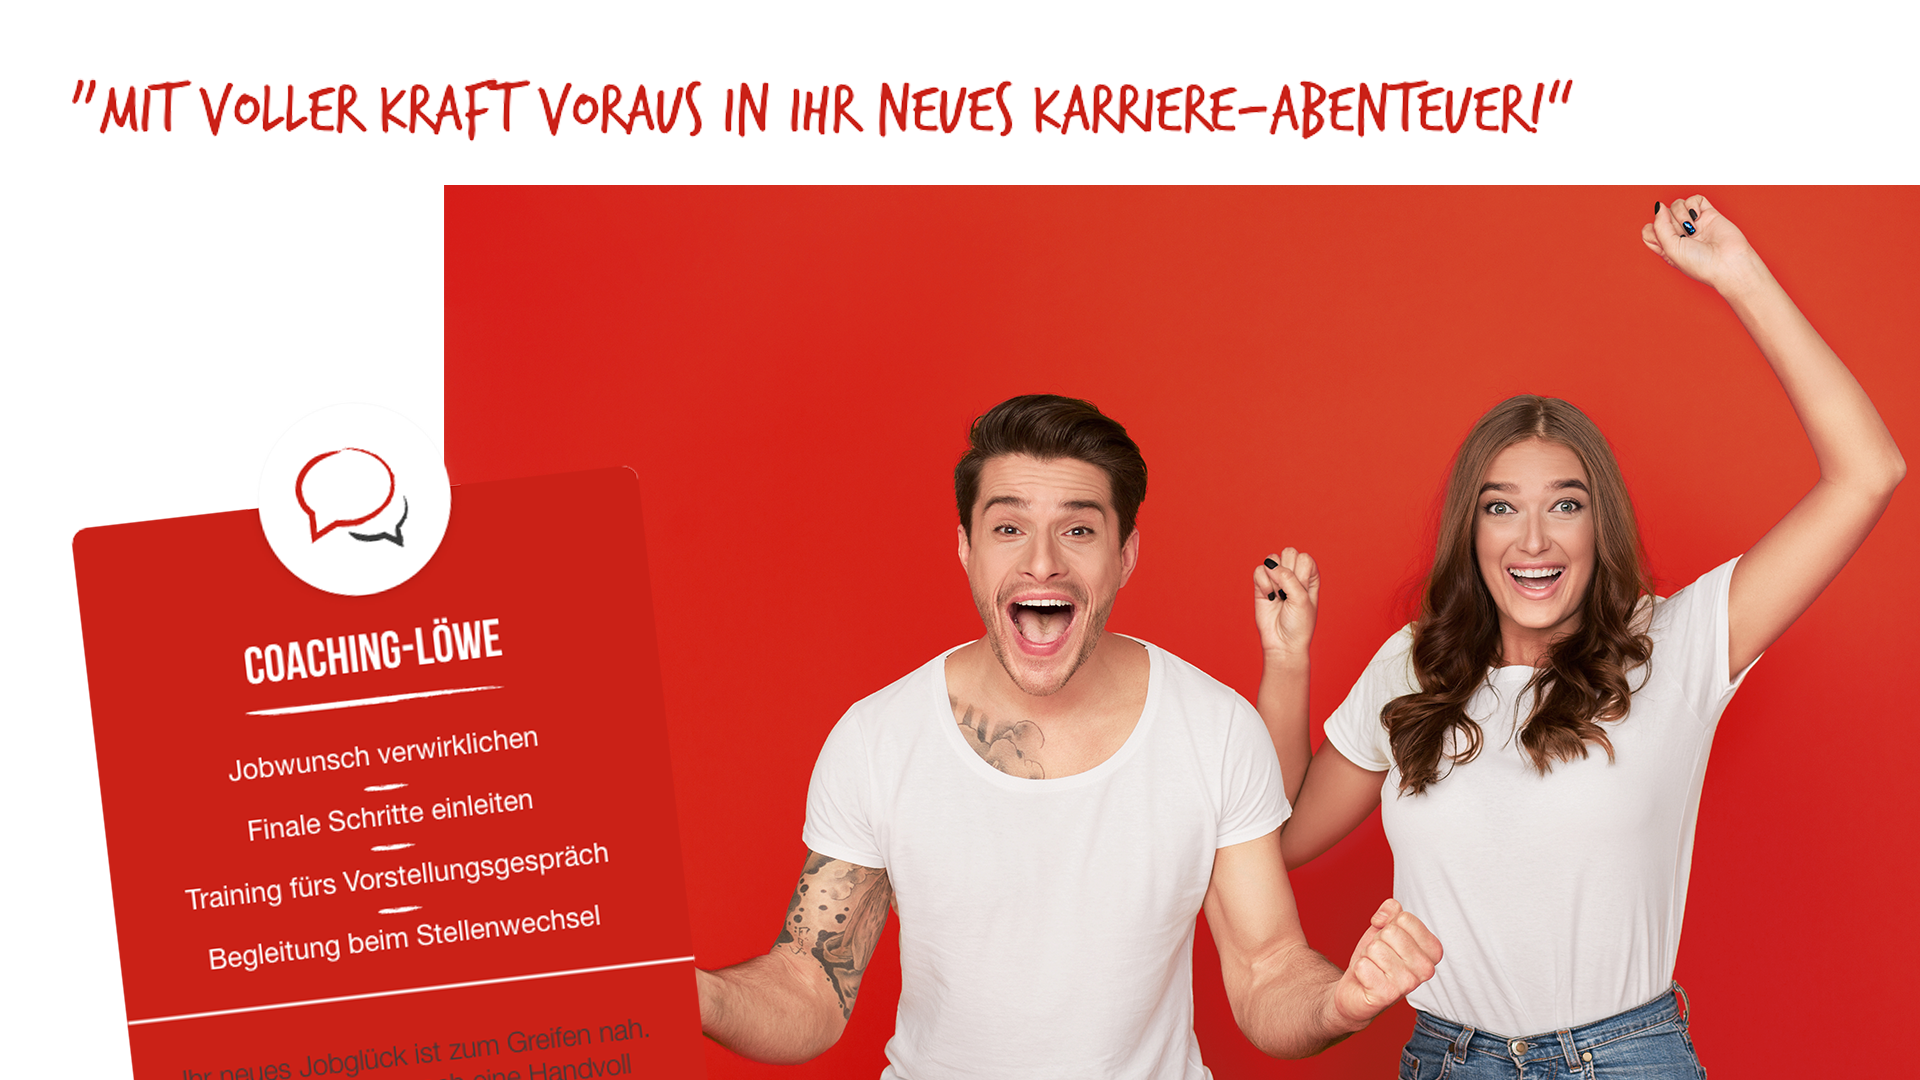 Scribble Werbeagentur nah bei Mönchengladbach zeigt ein Paar, das mit voller Kraft In ein neues Karriere-Abenteuer startet.